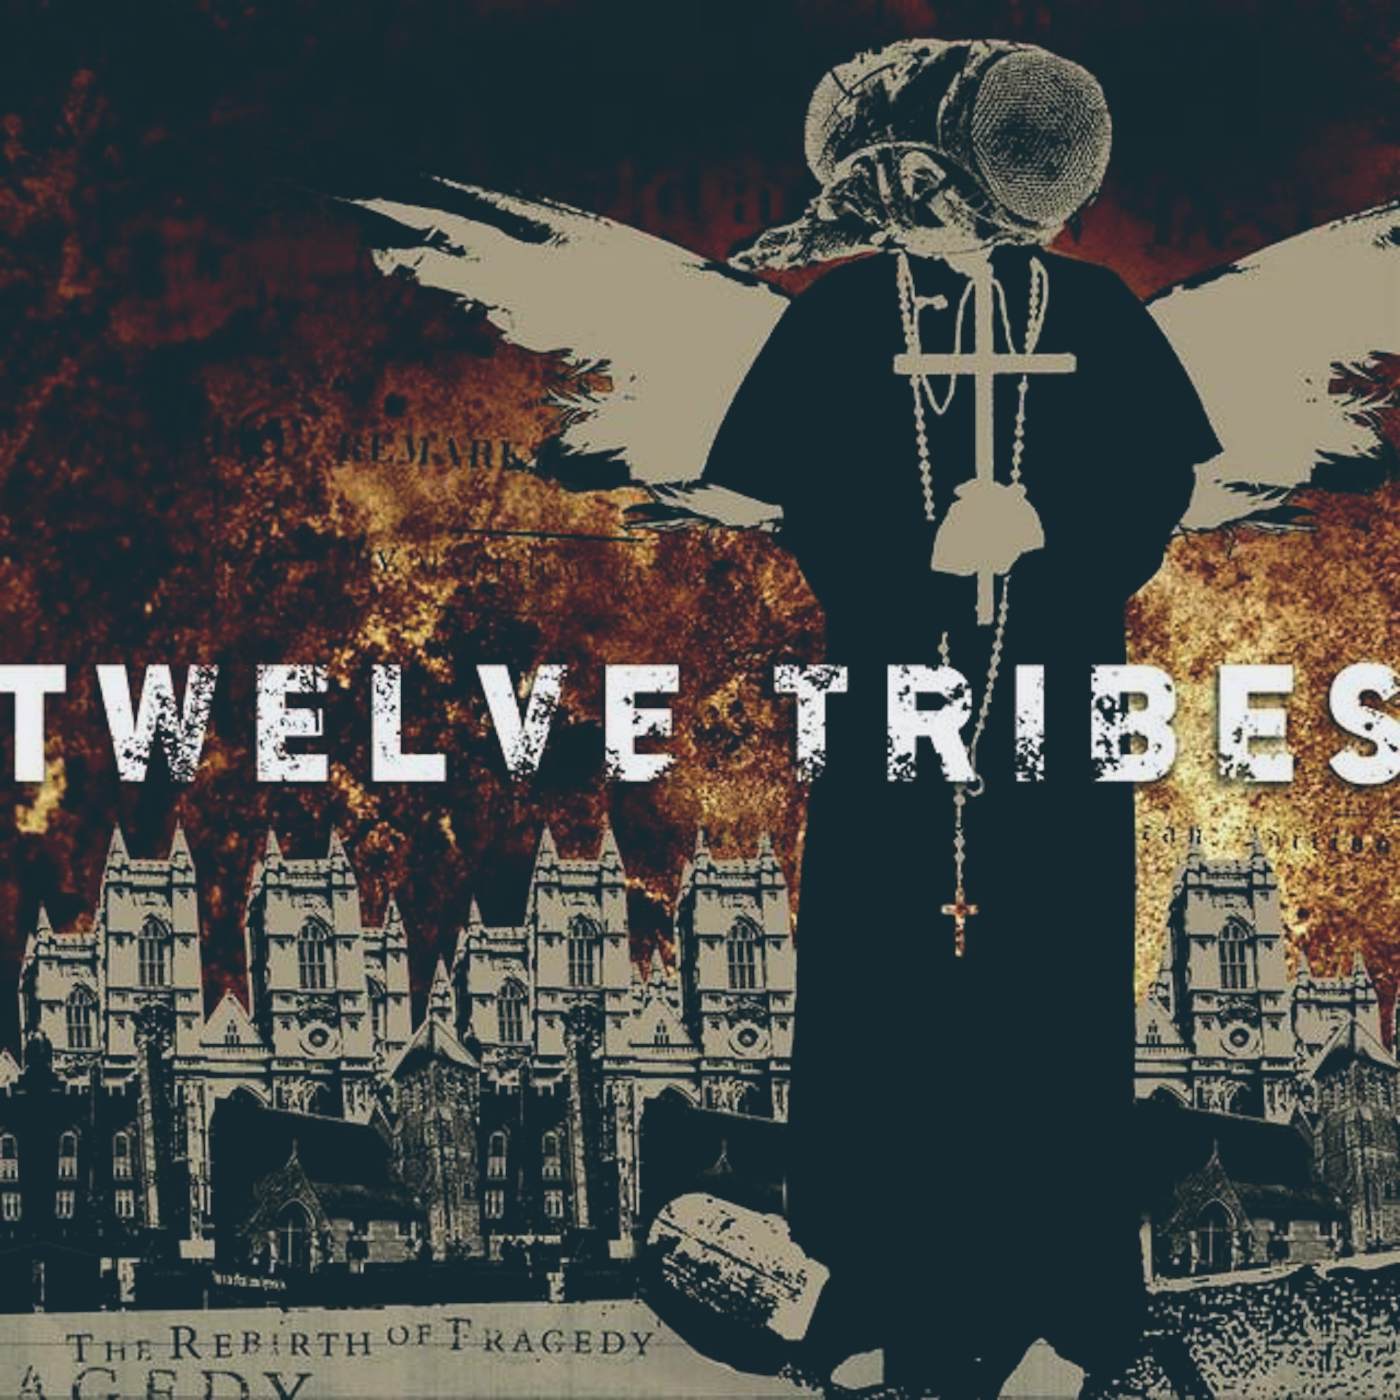 Twelve Tribes